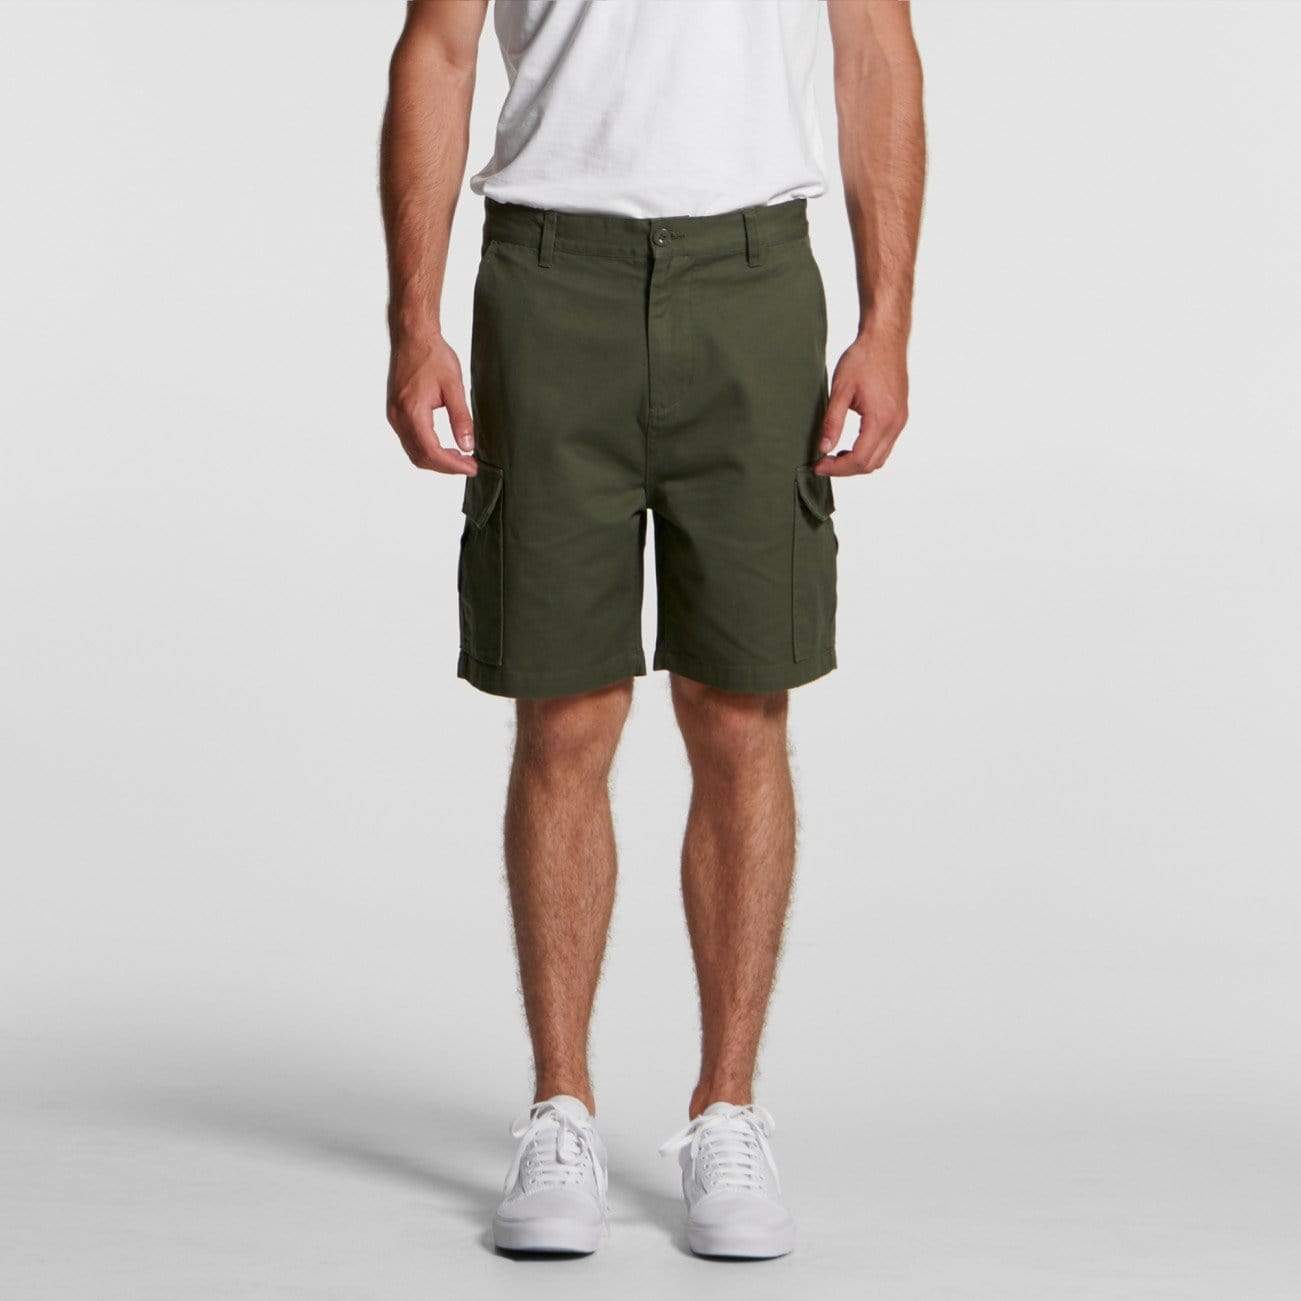 As Colour Men's cargo shorts 5913 Active Wear As Colour   